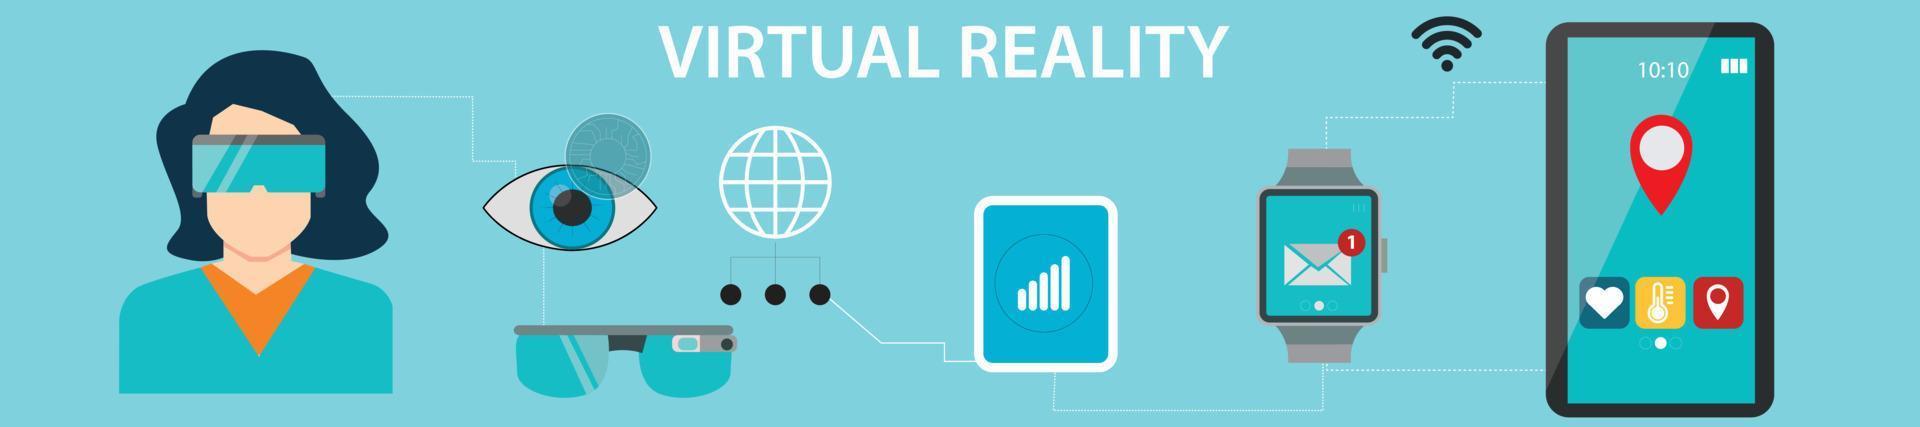 Menschen, die in einem Virtual-Reality-Universum interagieren vektor